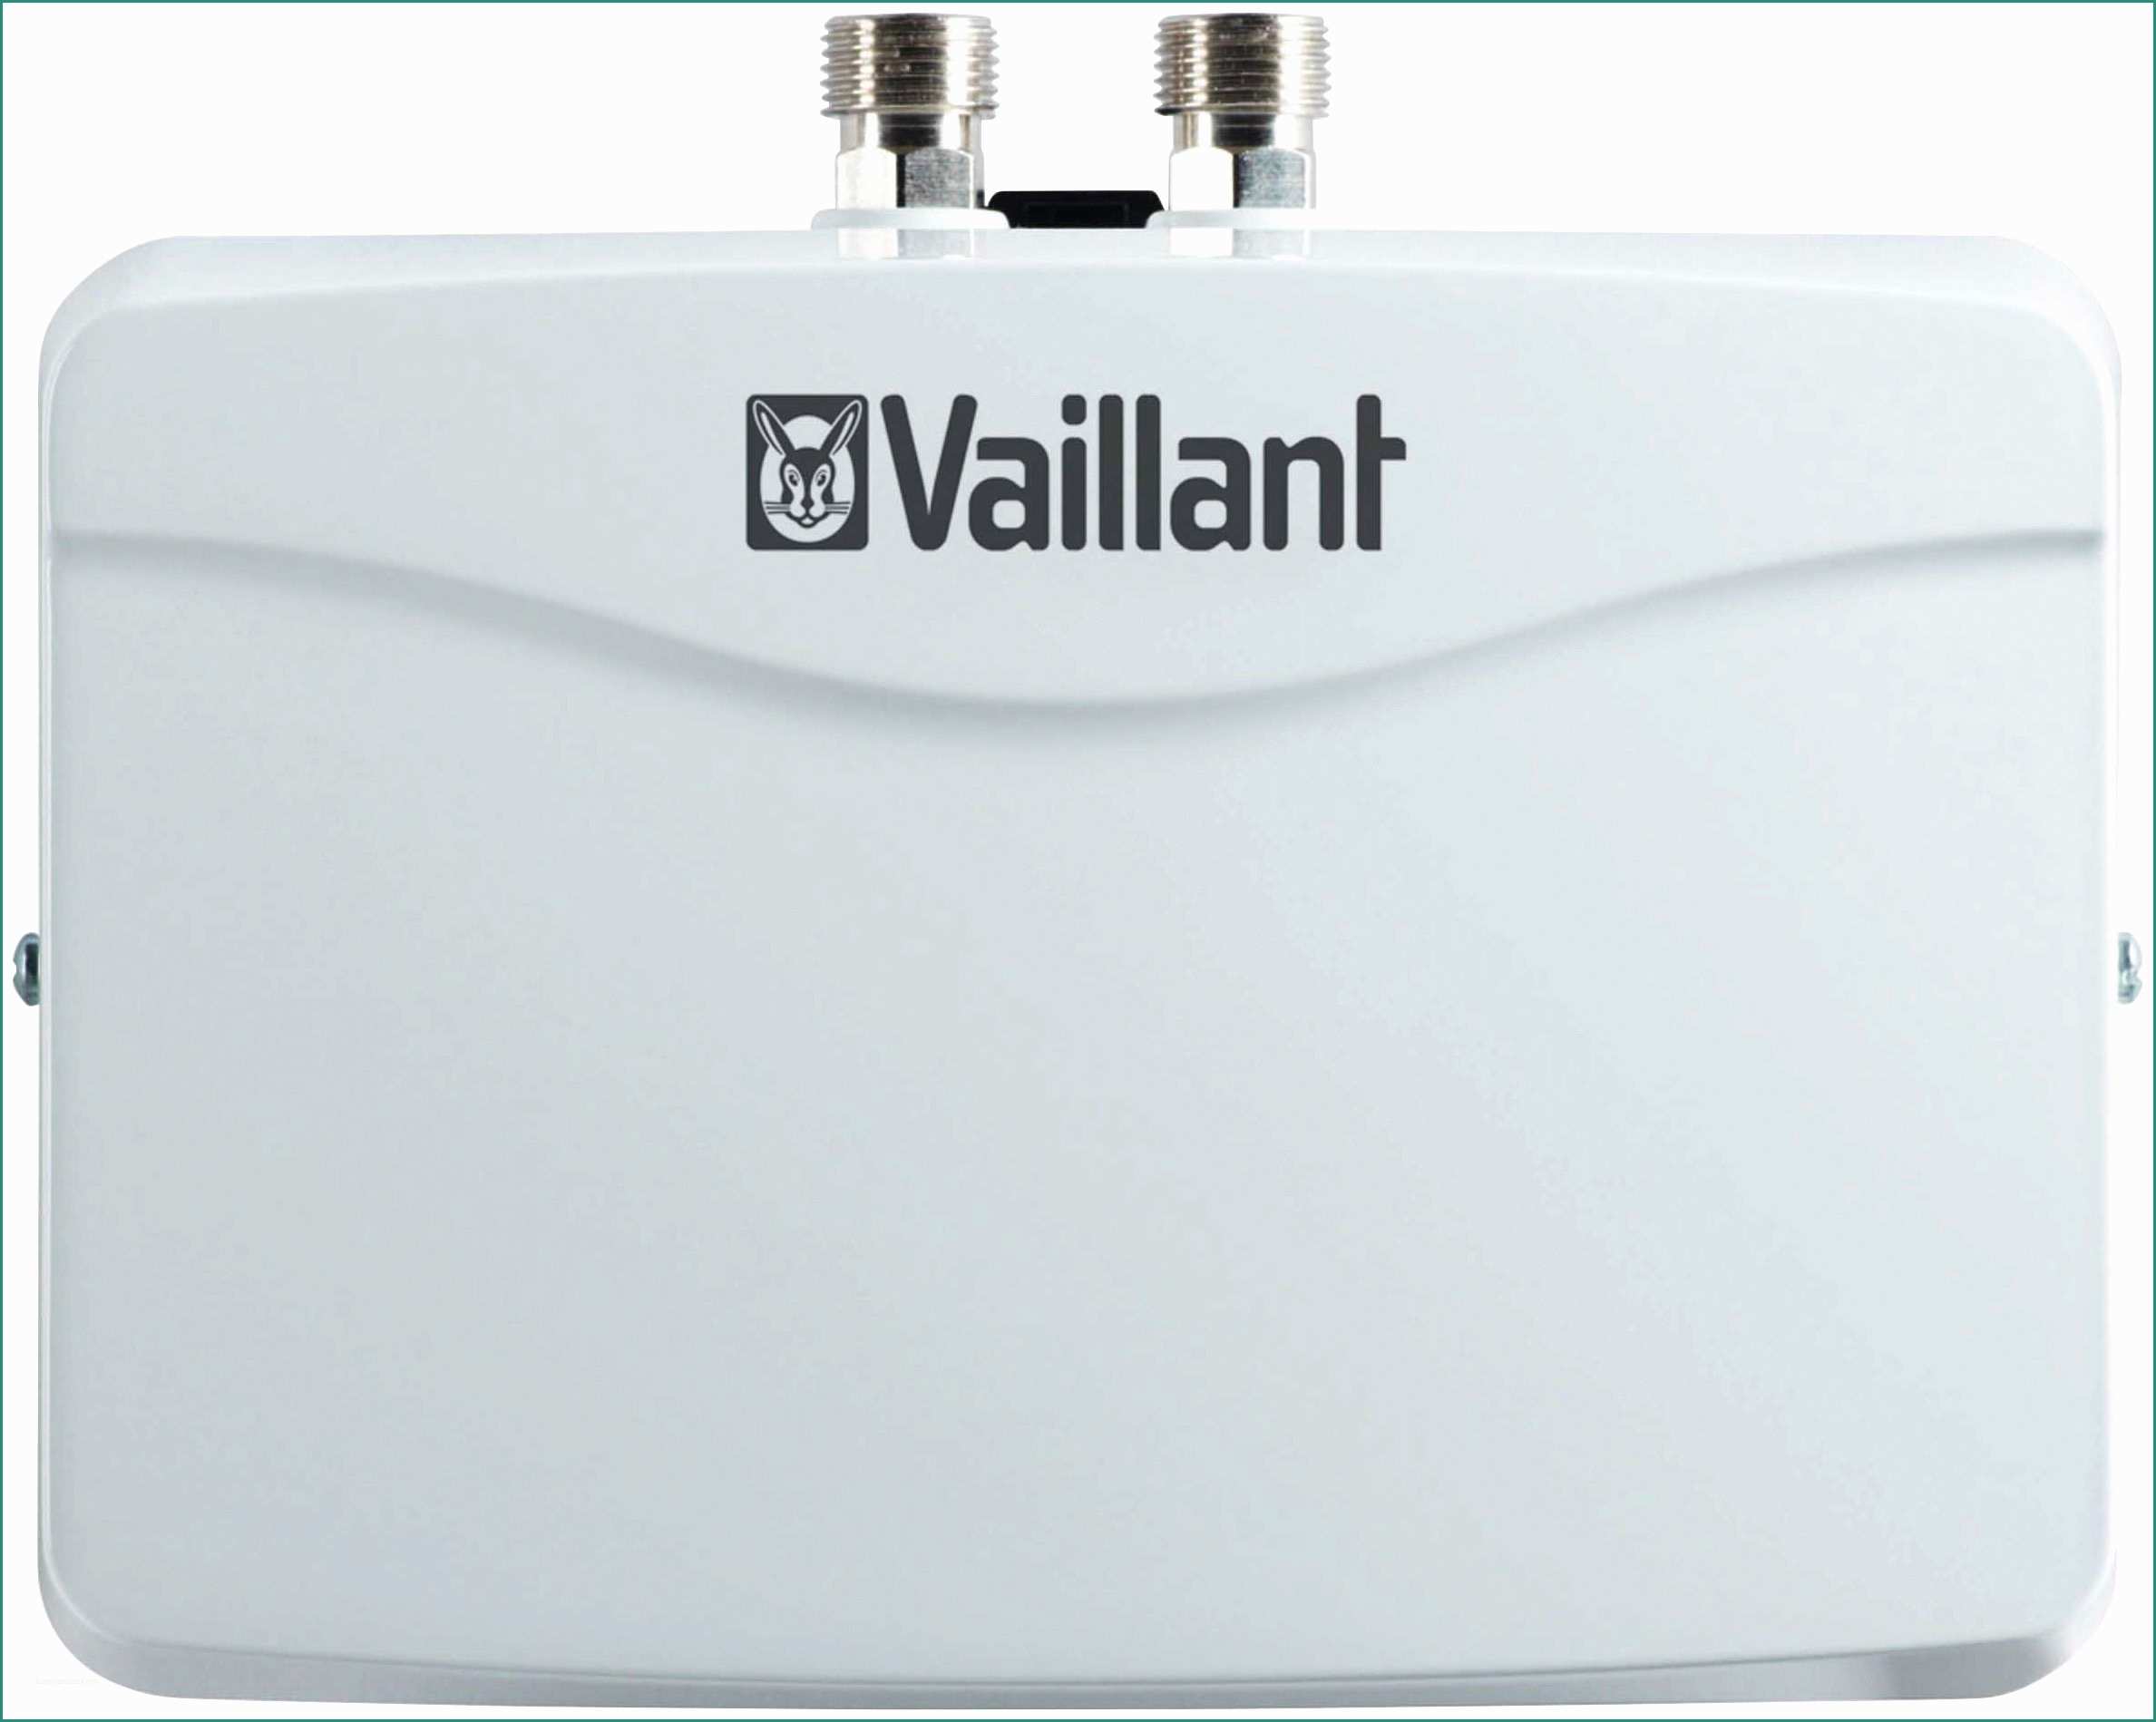 Vaillant Ecoblock Plus Manuale E Vaillant überströmventil Preisvergleich • Die Besten Angebote Online